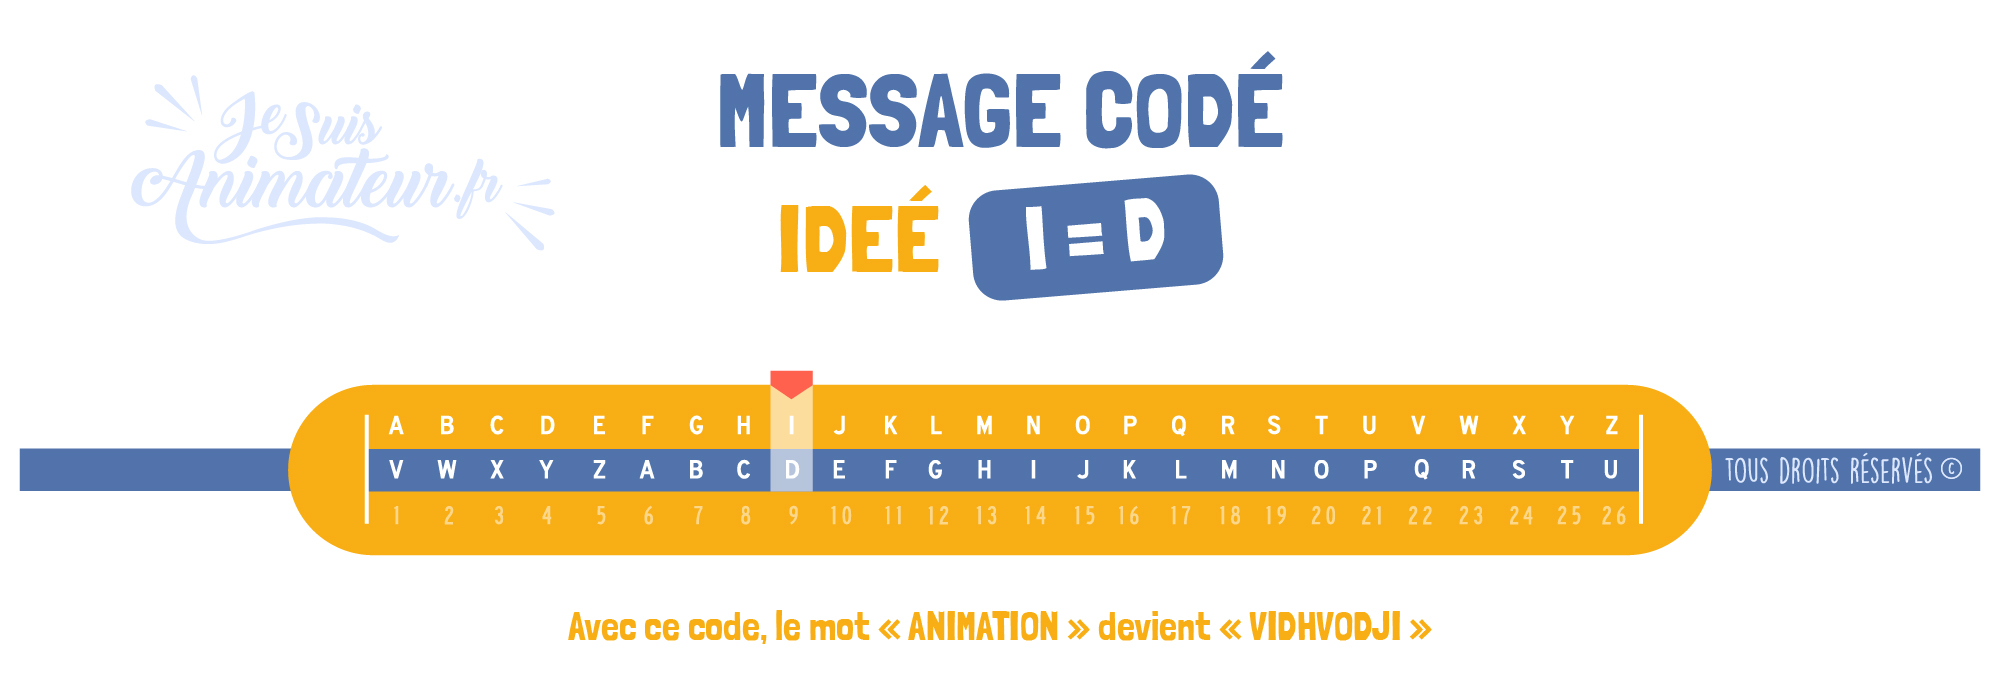 Message codé « Idée » (I = D)